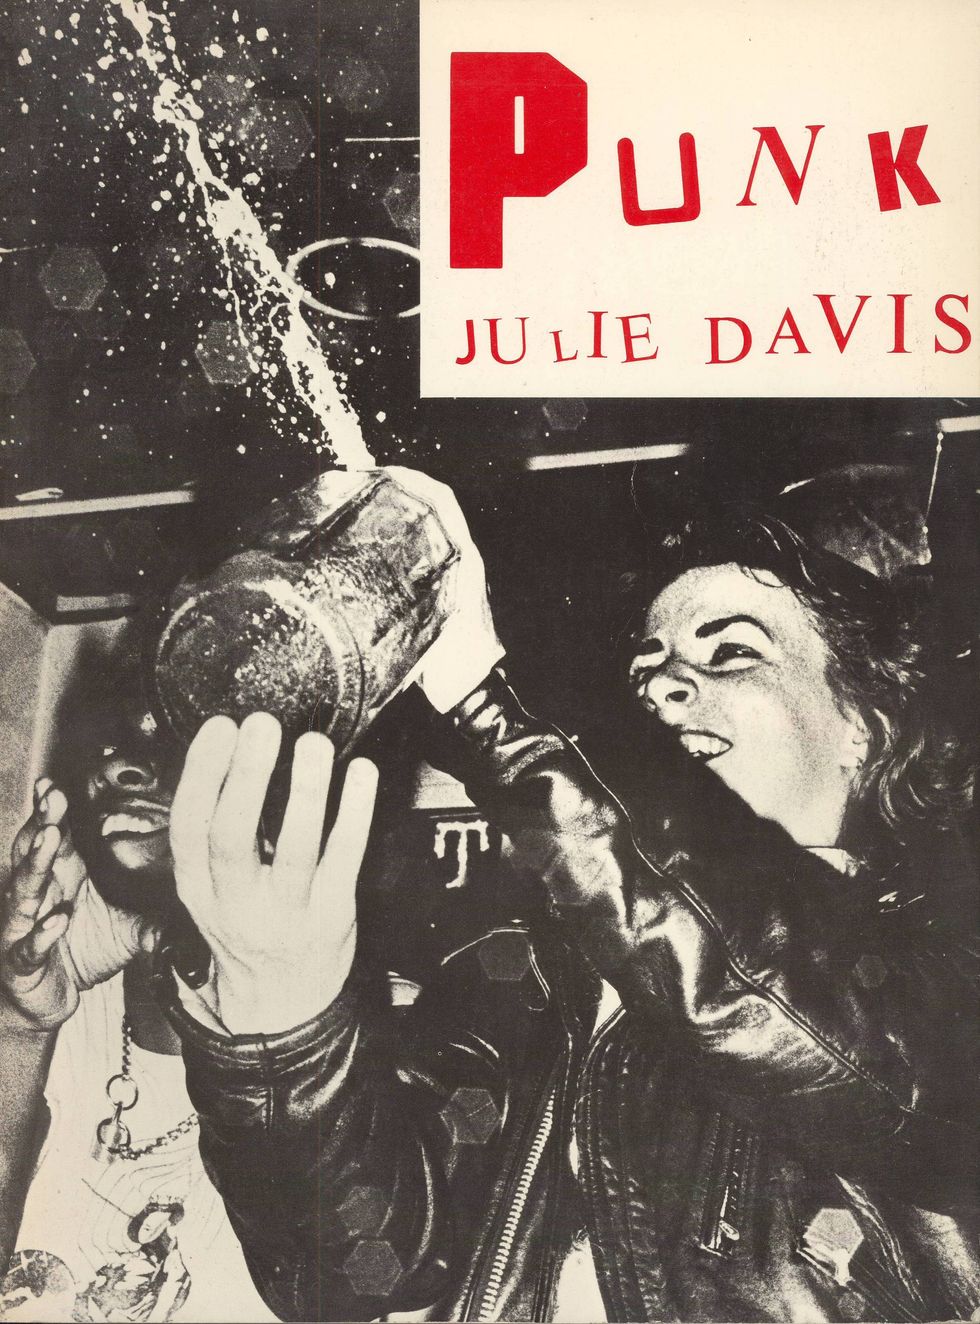 Punk by Julie Davis